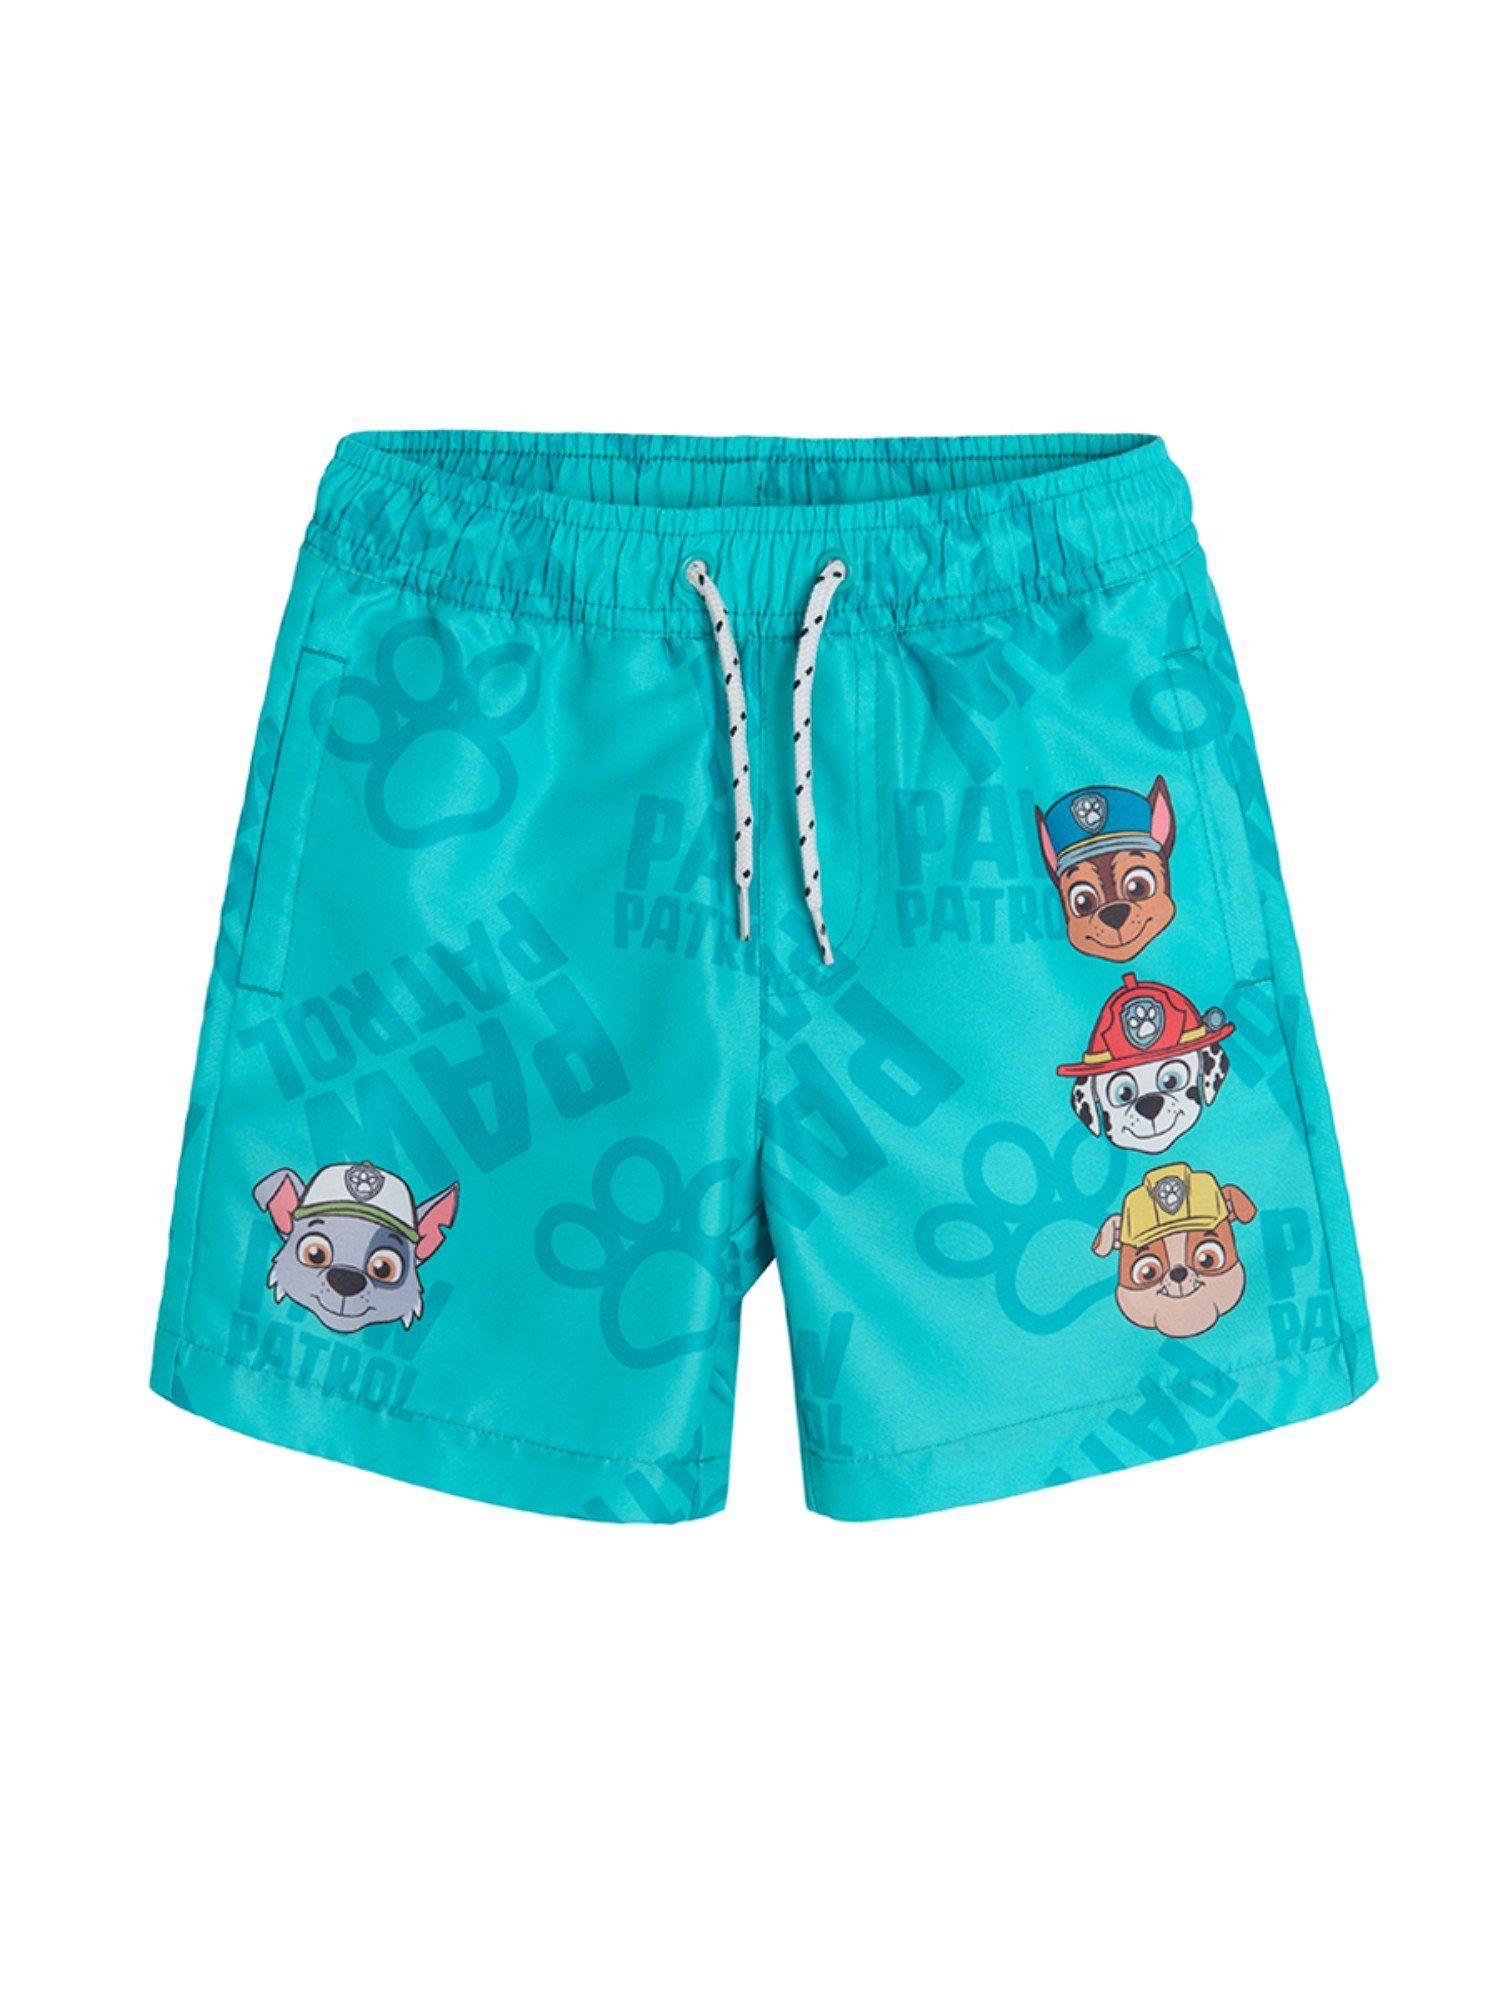 smyk paw patrol boys turquoise swimwear shorts